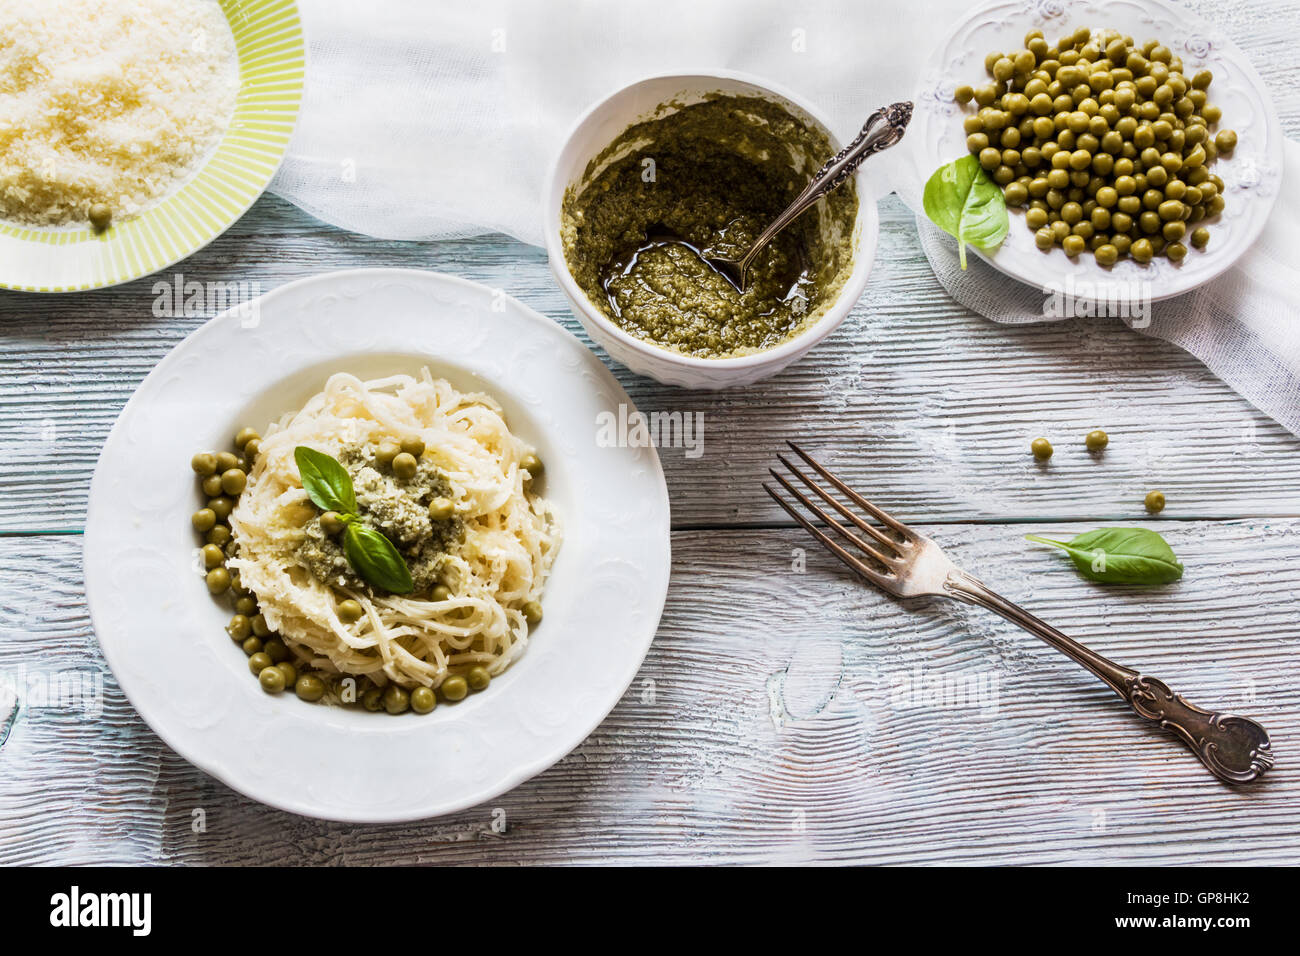 Espaguetis con salsa pesto sobre blanco vintage placa, queso rallado, hojas de albahaca fresca y judias verdes sobre fondo de madera Foto de stock